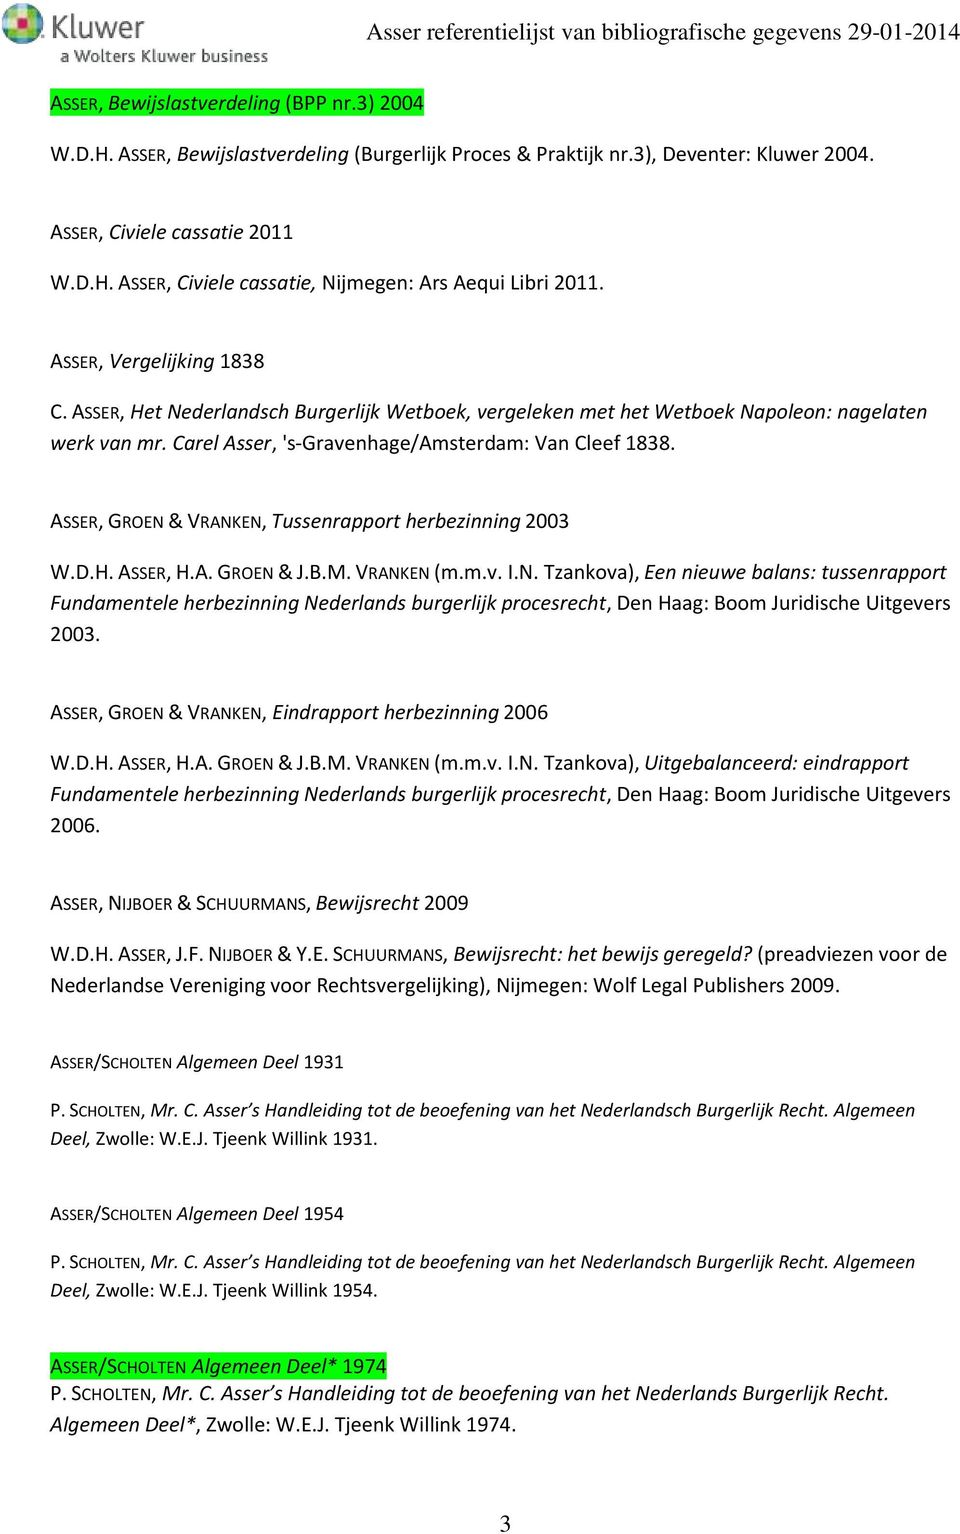 ASSER, GROEN & VRANKEN, Tussenrapport herbezinning 2003 W.D.H. ASSER, H.A. GROEN & J.B.M. VRANKEN (m.m.v. I.N. Tzankova), Een nieuwe balans: tussenrapport Fundamentele herbezinning Nederlands burgerlijk procesrecht, Den Haag: Boom Juridische Uitgevers 2003.